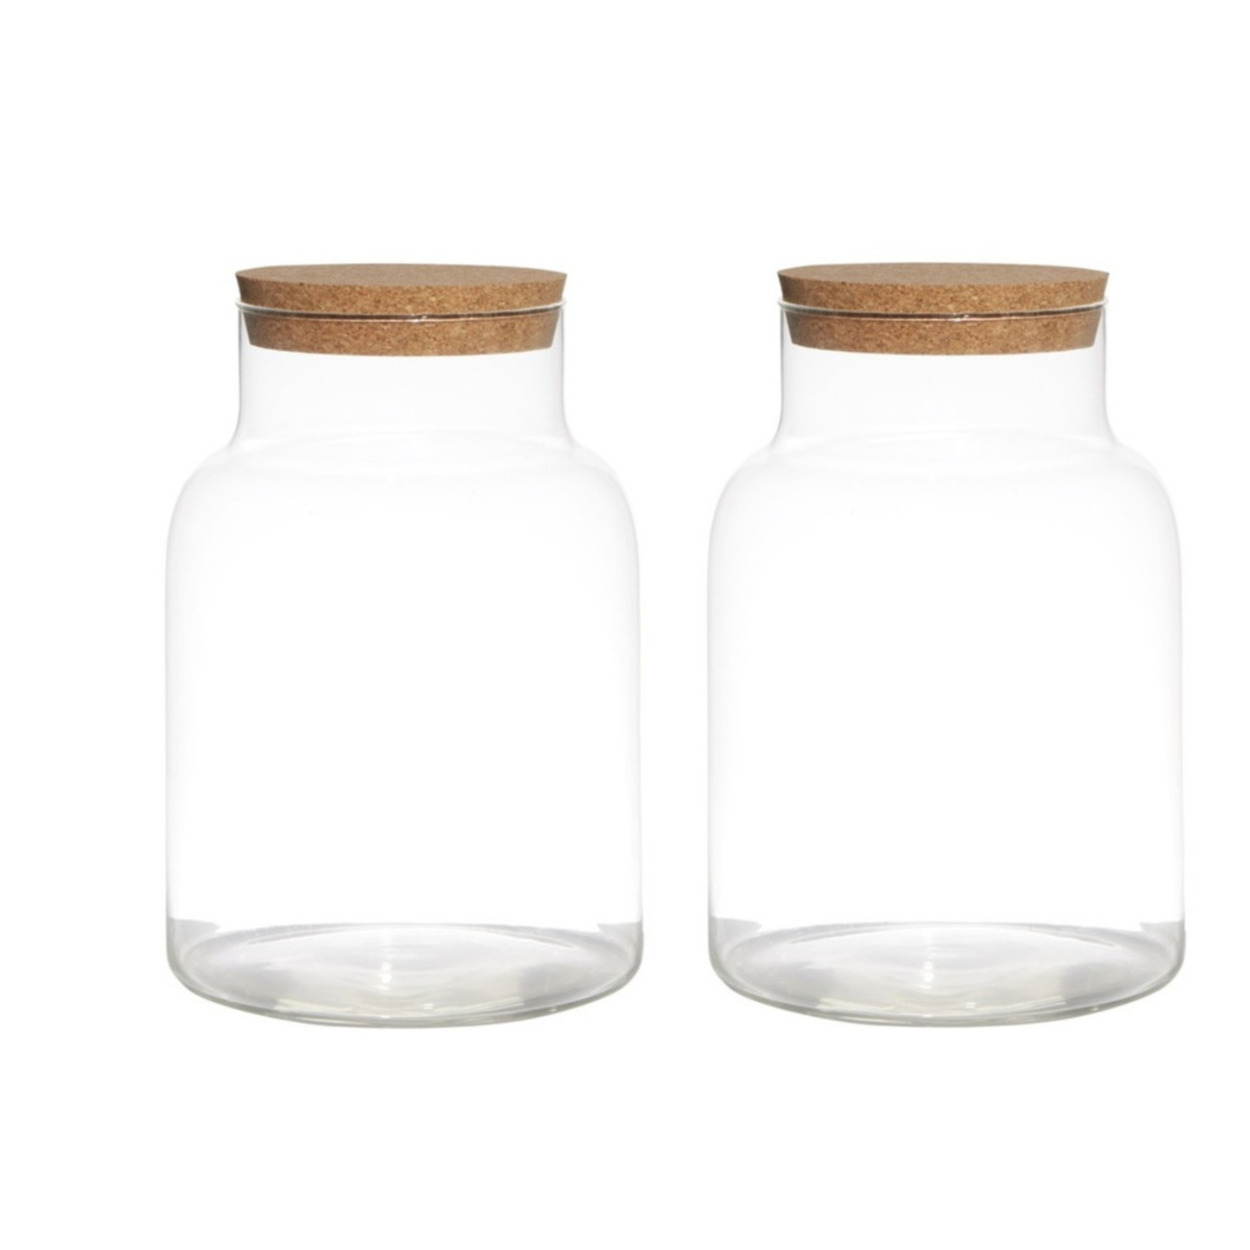 Merkloos Set van 2x stuks glazen voorraadpotten/snoeppotten vazen van 17.5 x 25 cm met kurk dop -